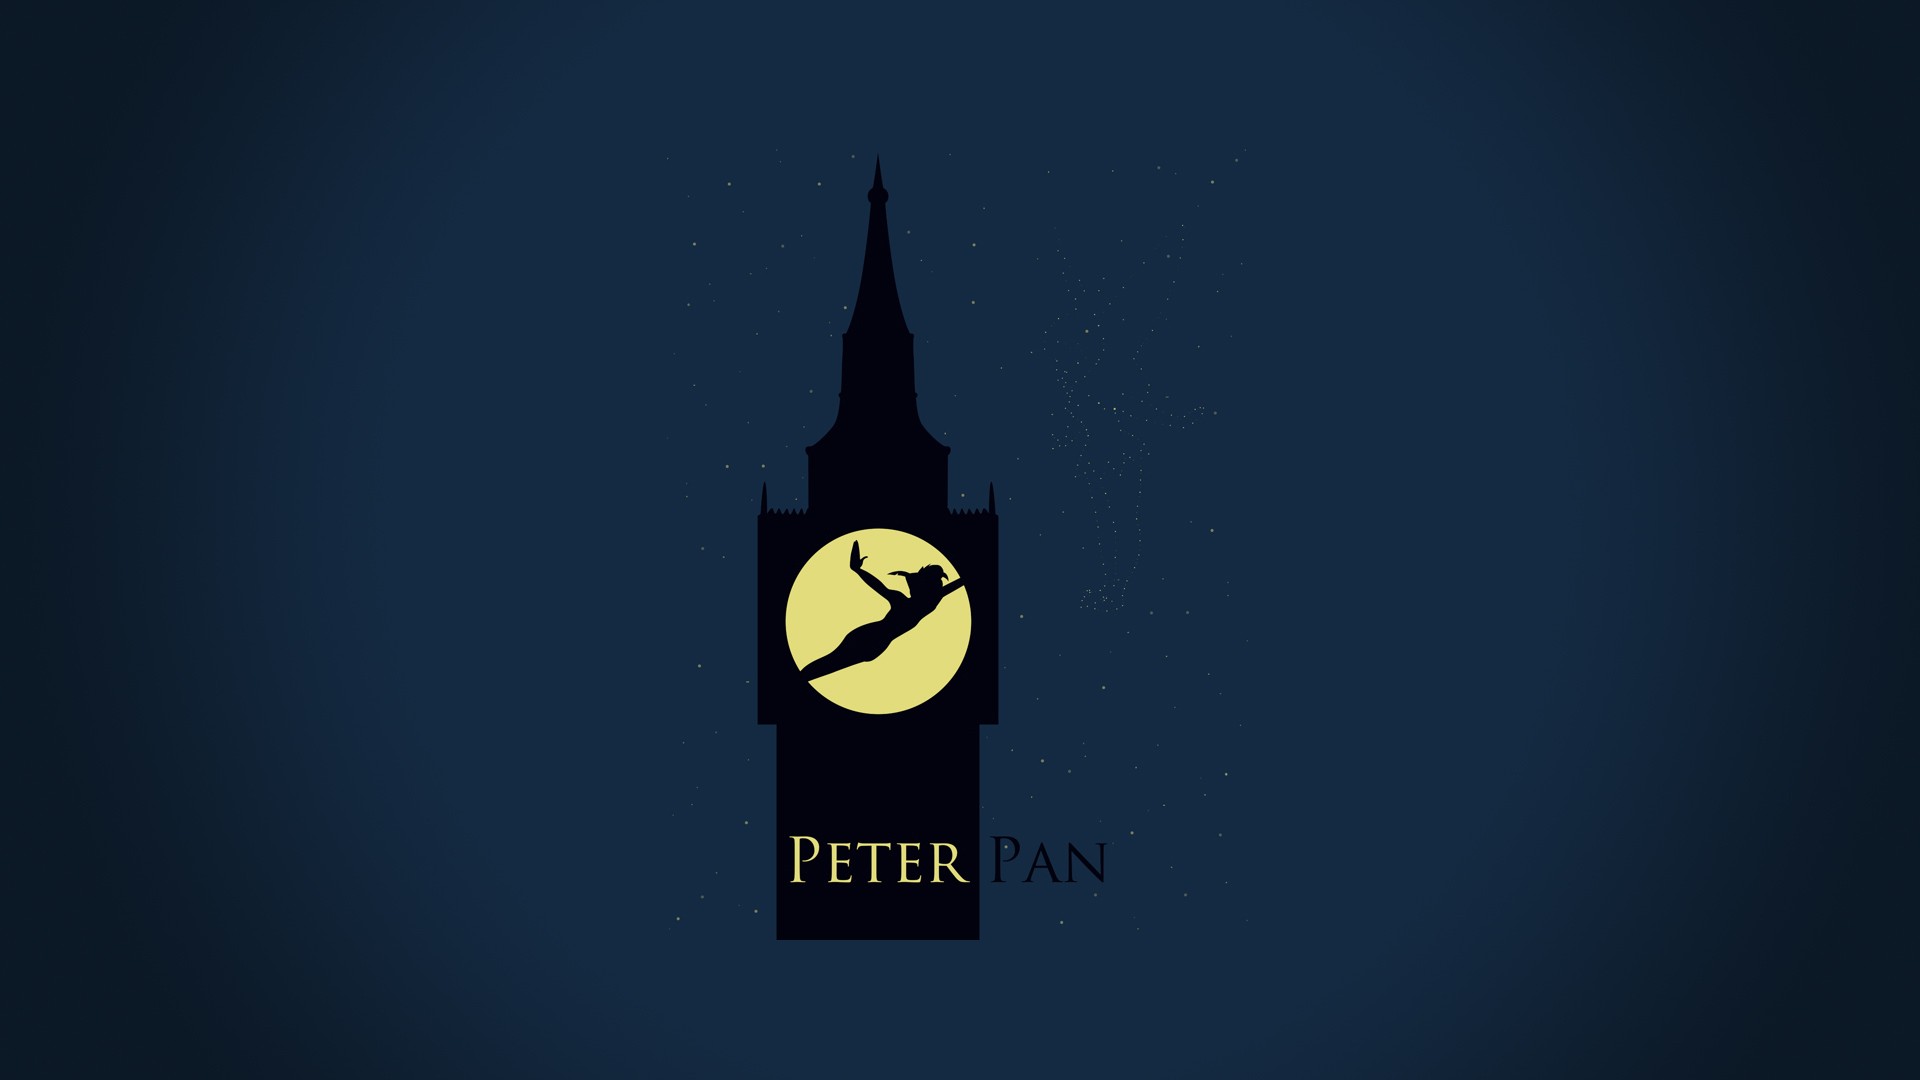  Peter Pan Clocktower Wallpaper hd background   HD Wallpapers